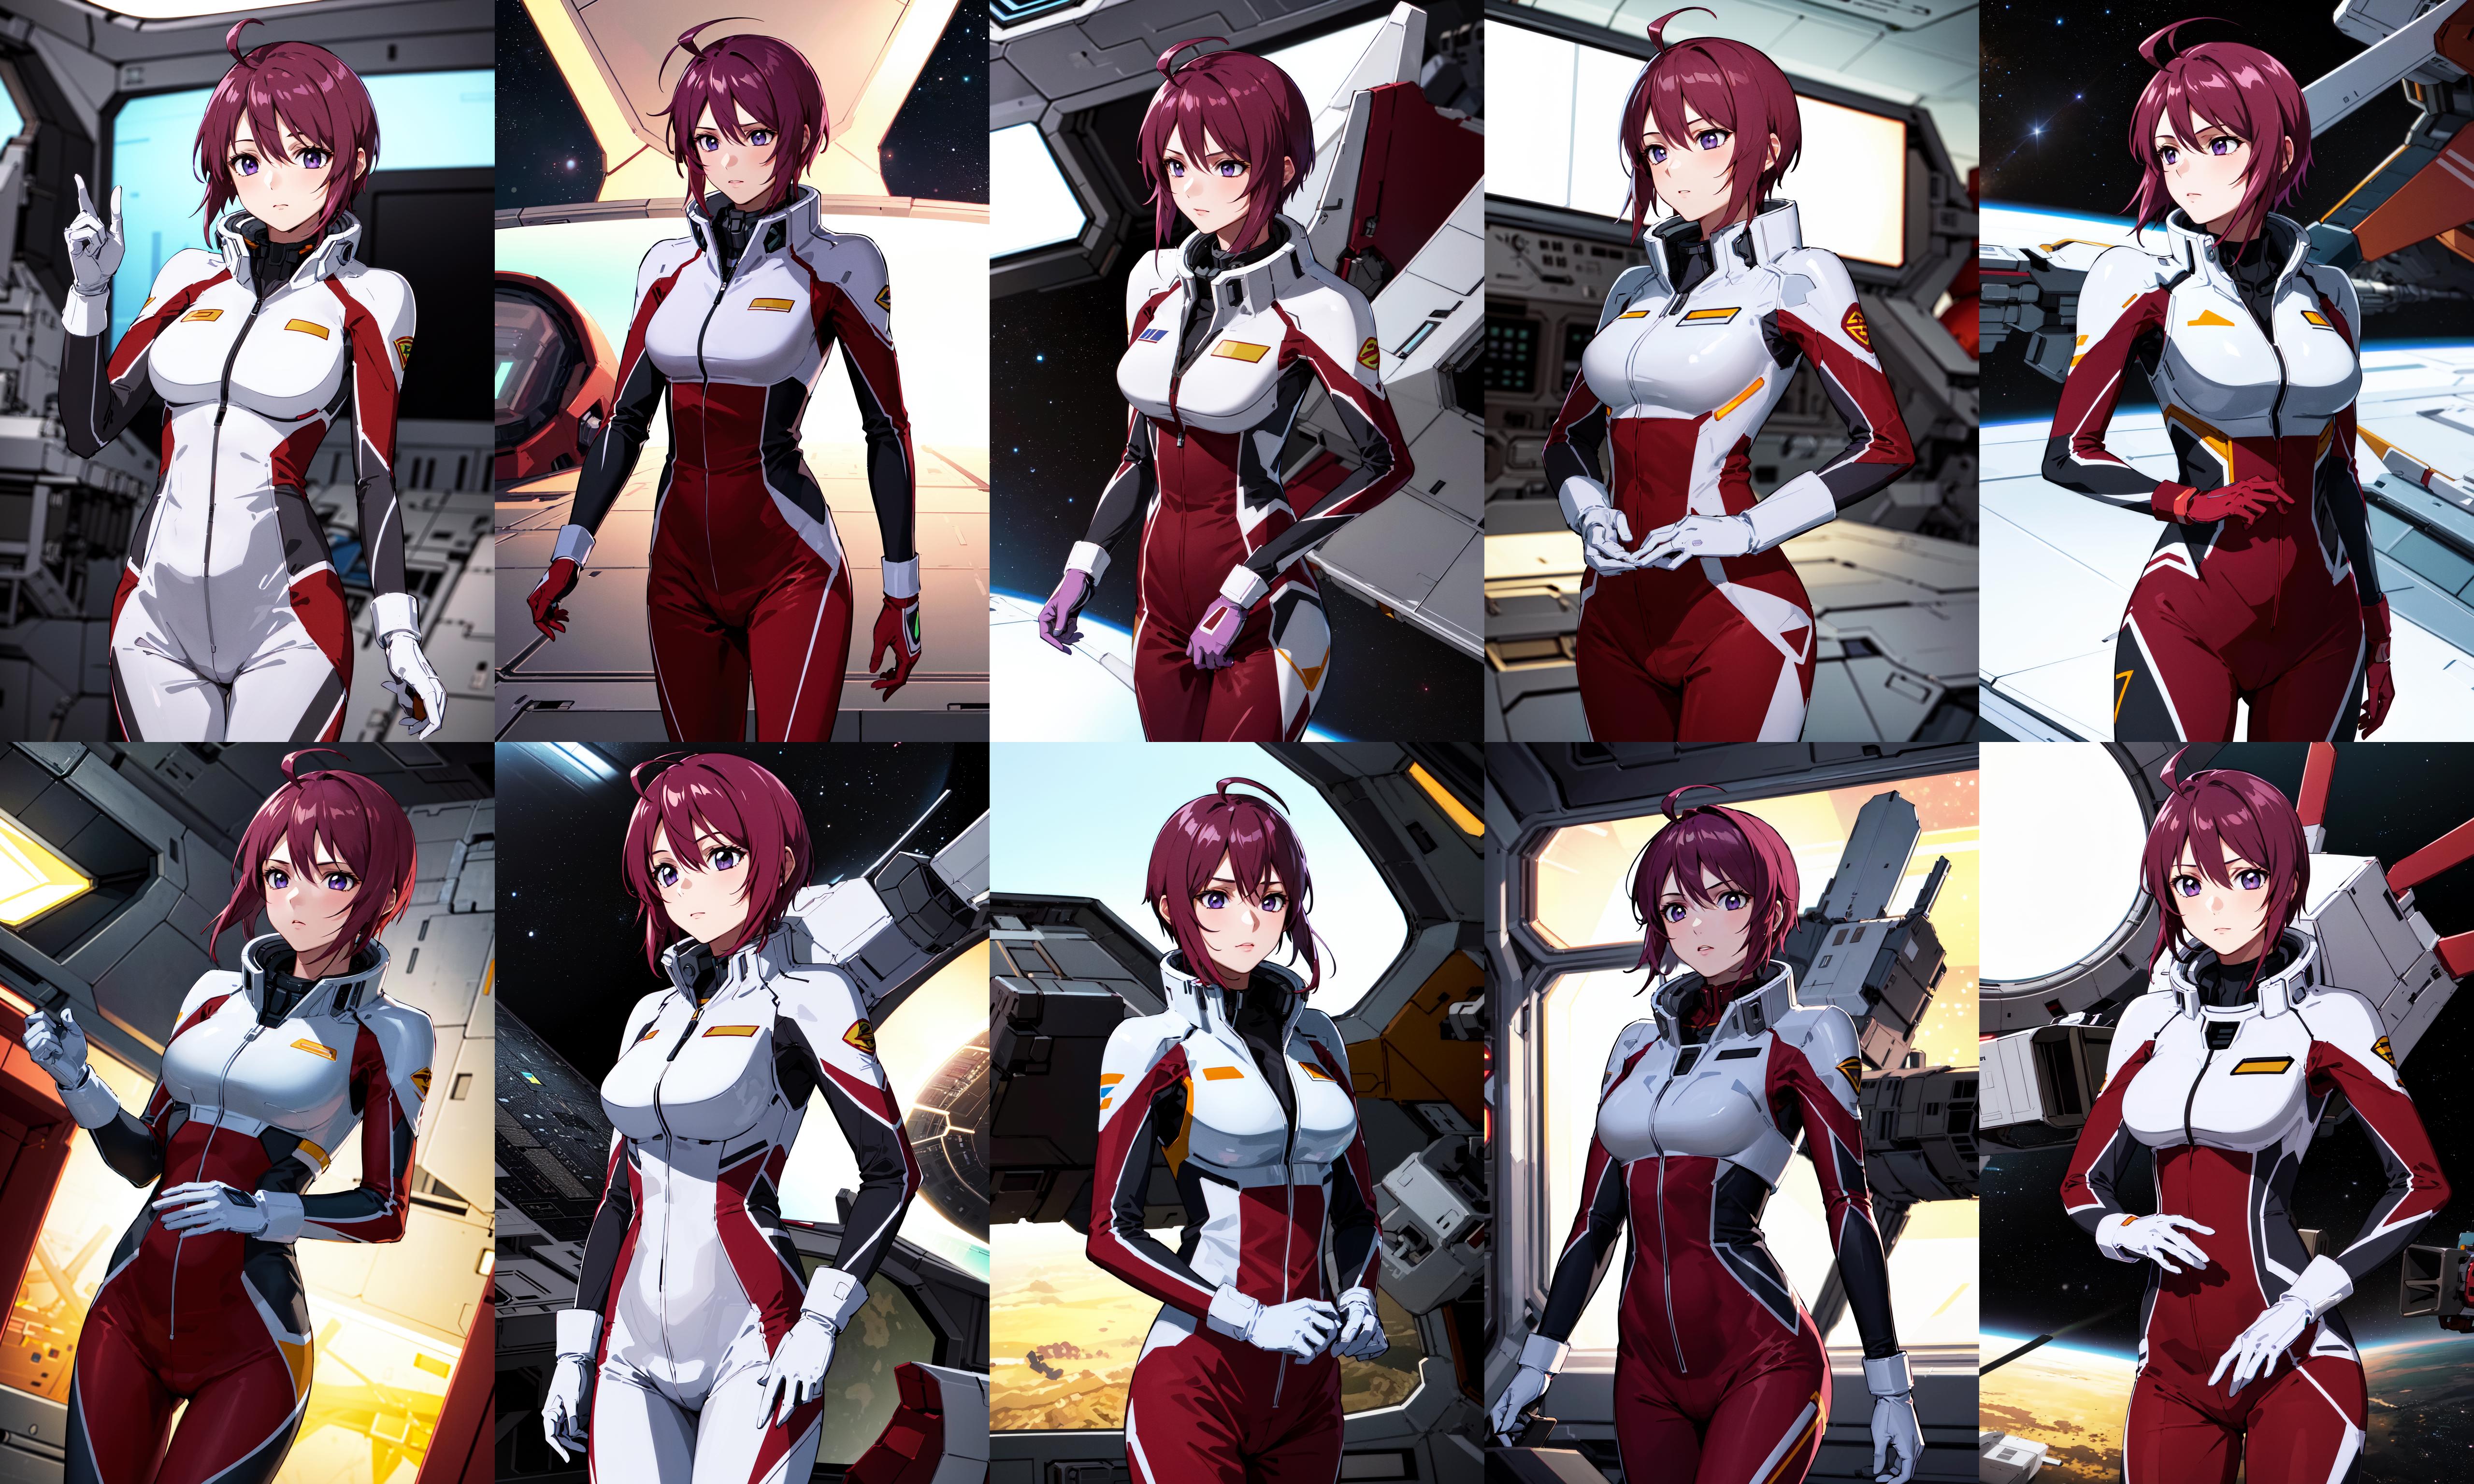 Lunamaria Hawke ルナマリア・ホーク / Gundam SEED Destiny image by h_madoka